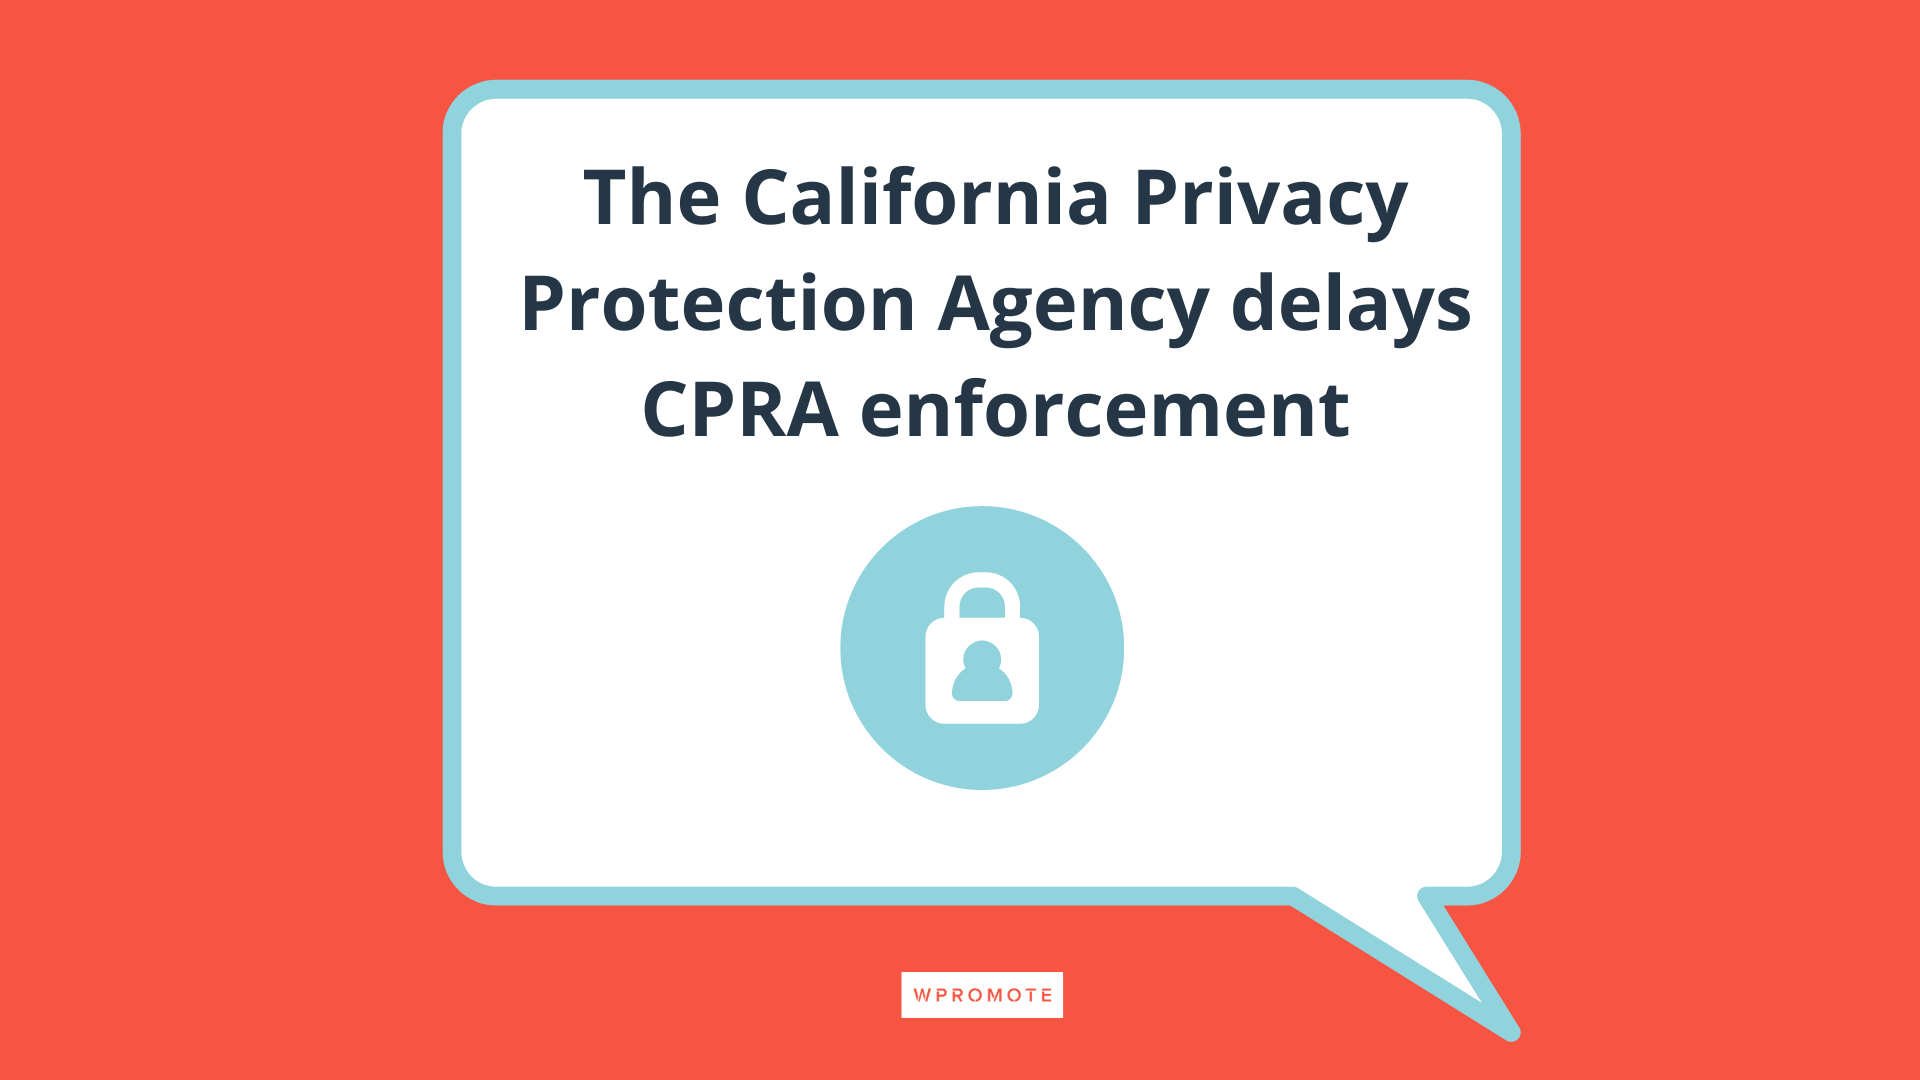 L'Agence californienne de protection de la vie privée retarde l'application de l'ACPL dans une bulle de dialogue